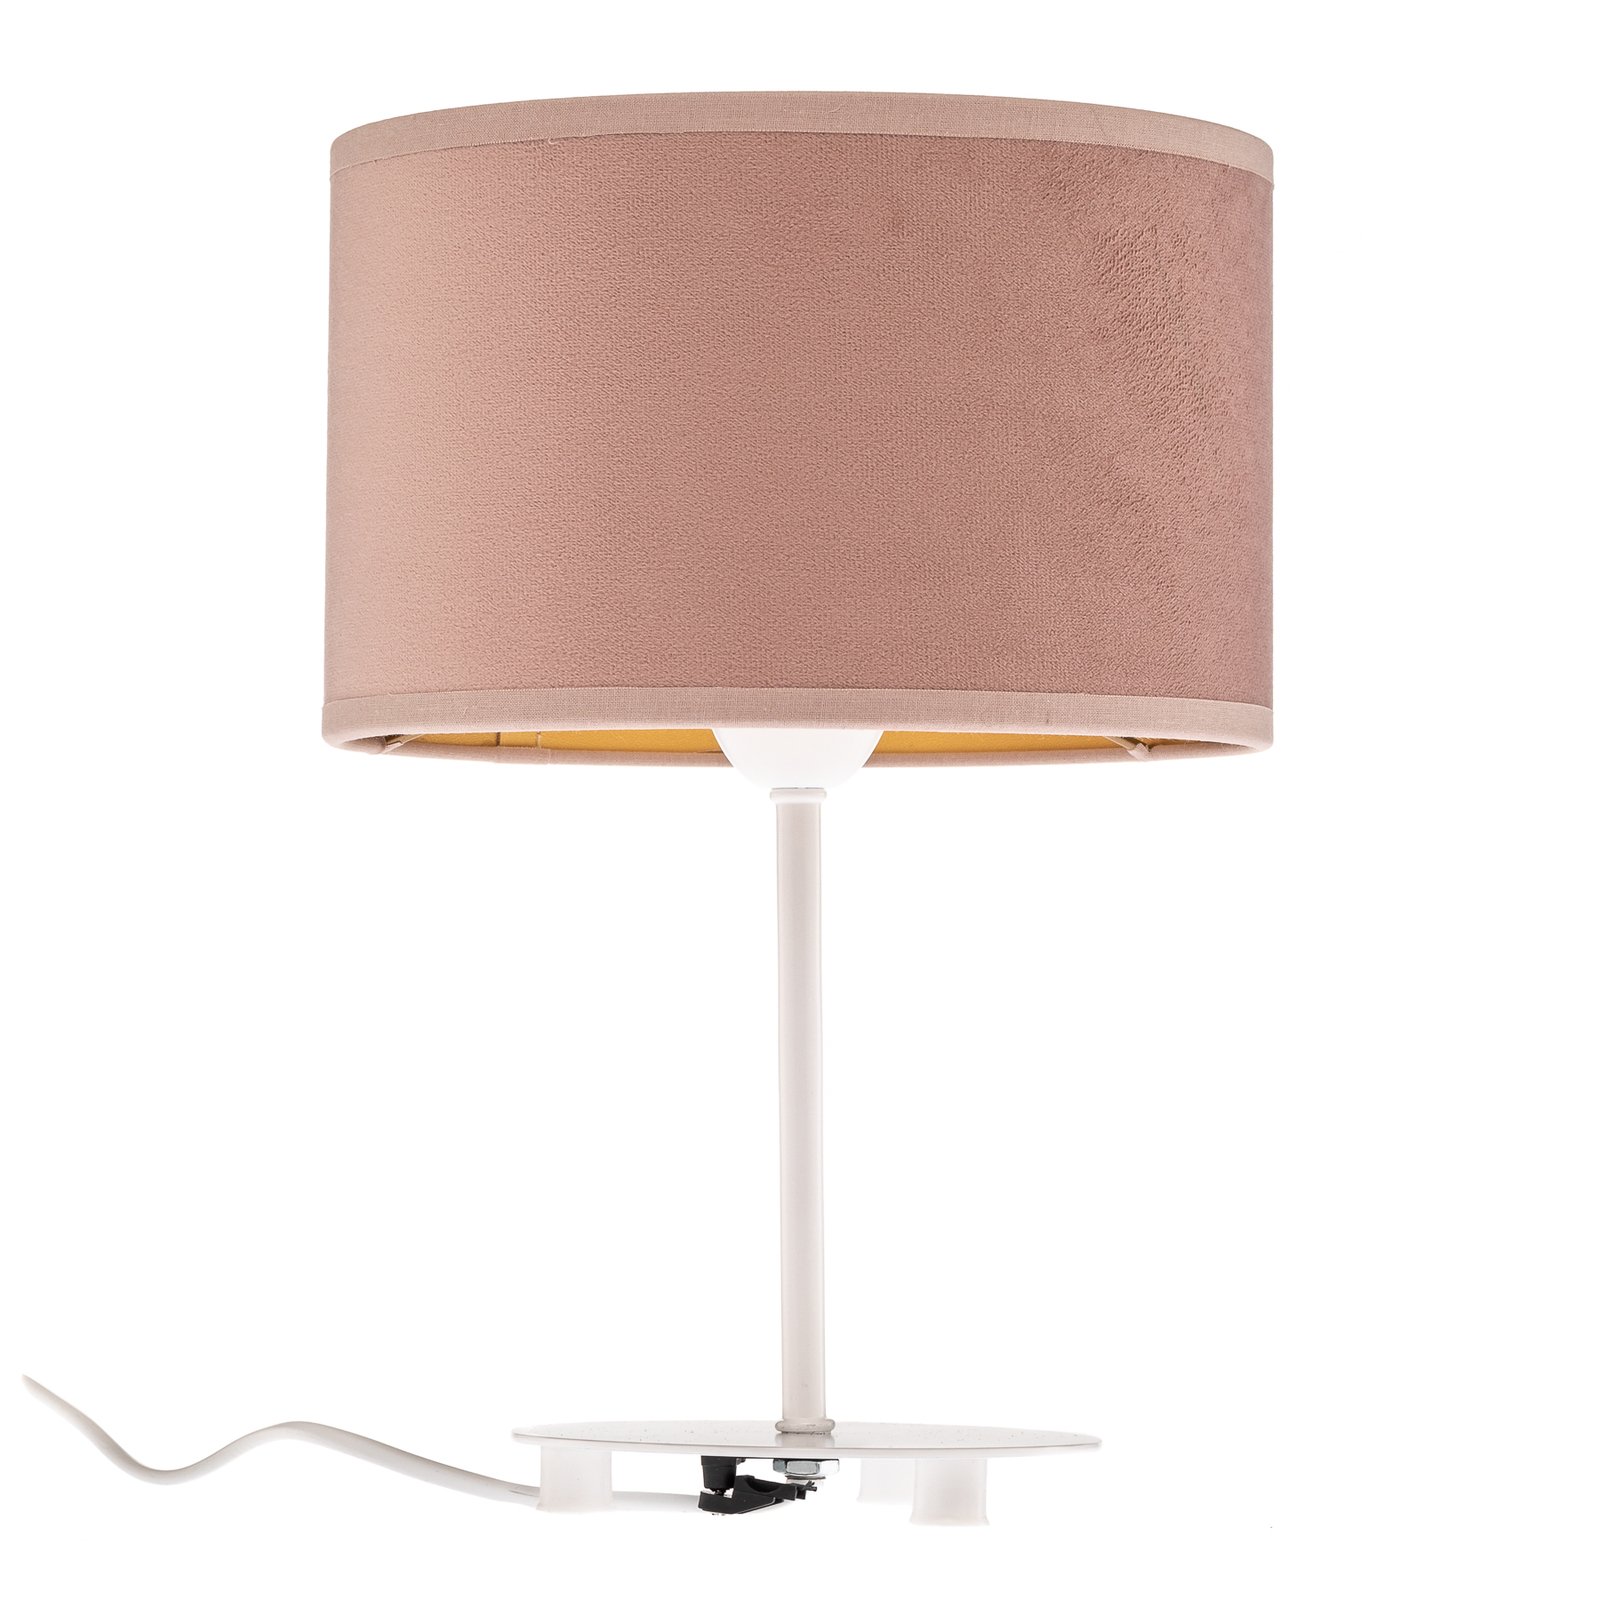 Pöytälamppu Golden Roller korkeus 30cm roosa/kulta